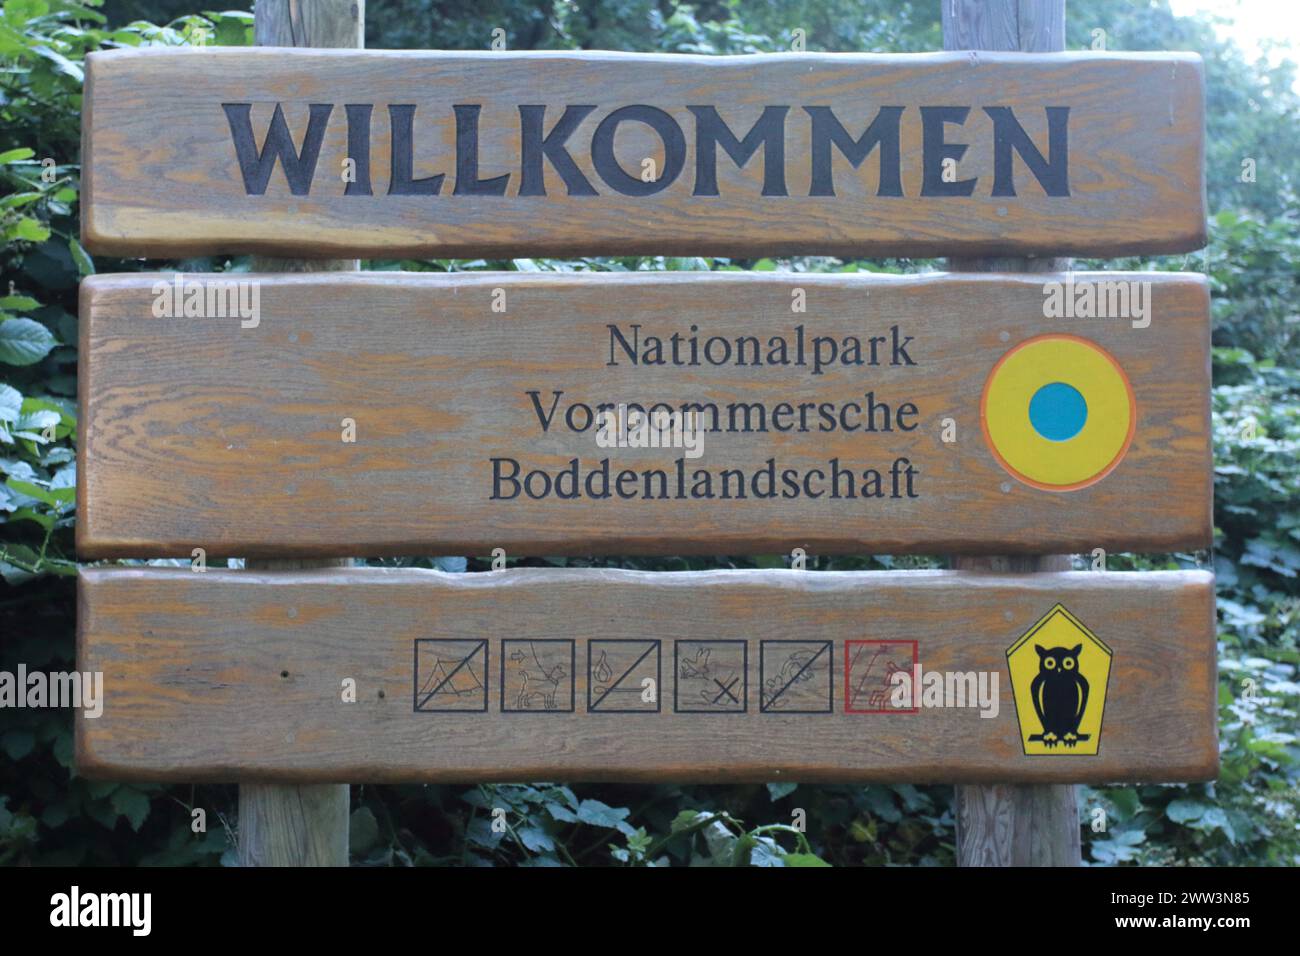 Le parc national de la région lagune de Poméranie occidentale (Nationalpark Vorpommersche Boddenlandschaft) est le plus grand parc national du Mecklembourg-Poméranie occidentale, situa Banque D'Images